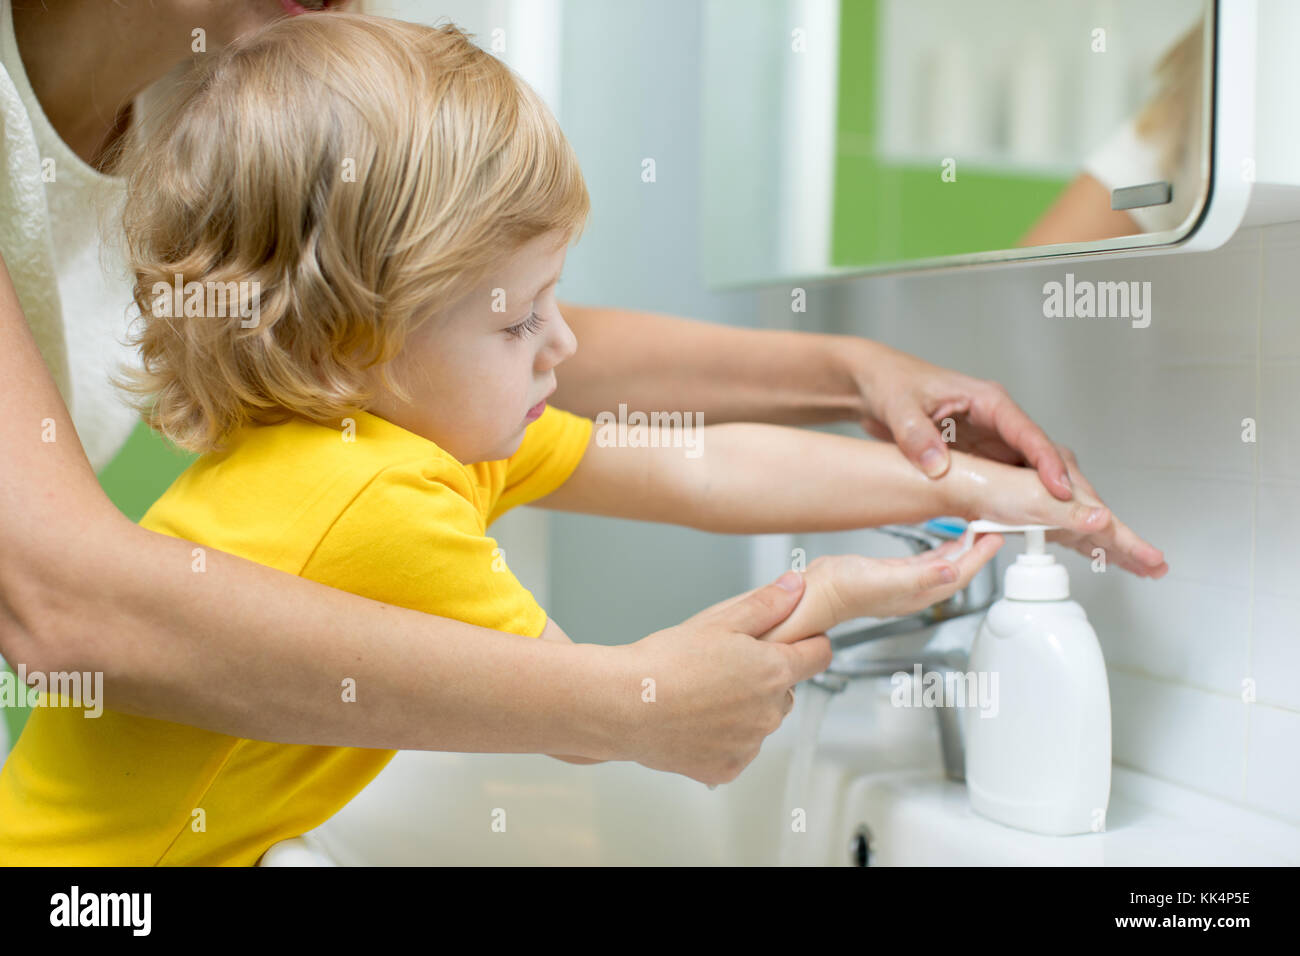 La madre y el niño, hijo de lavarse las manos en el baño. La atención y preocupación por los niños. Foto de stock